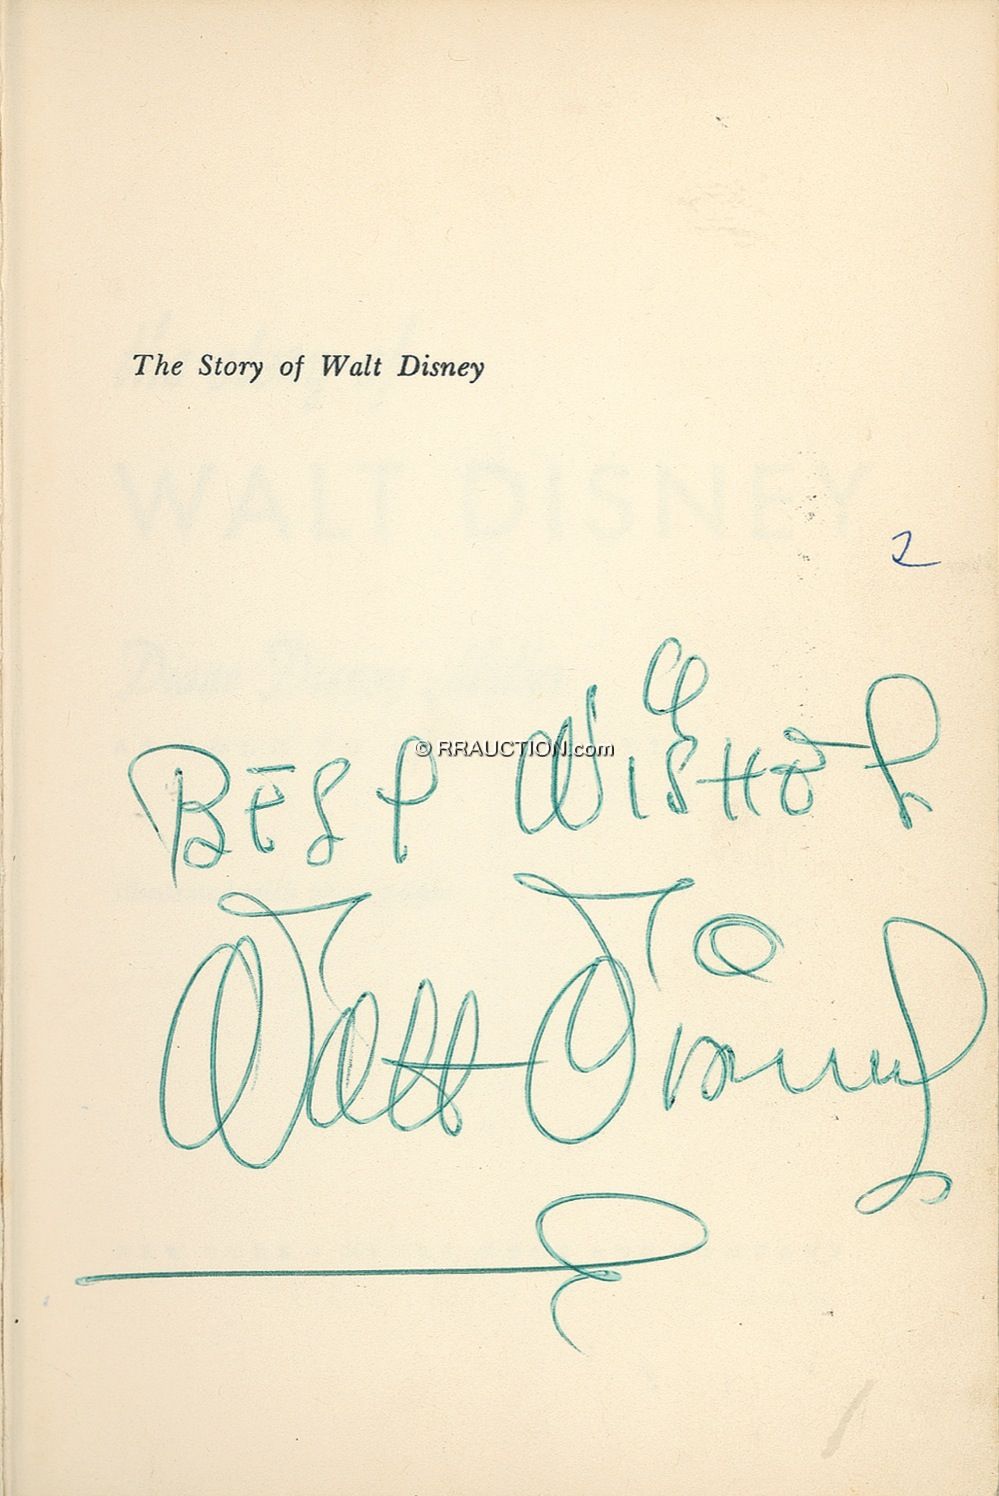 Lot #671 Walt Disney